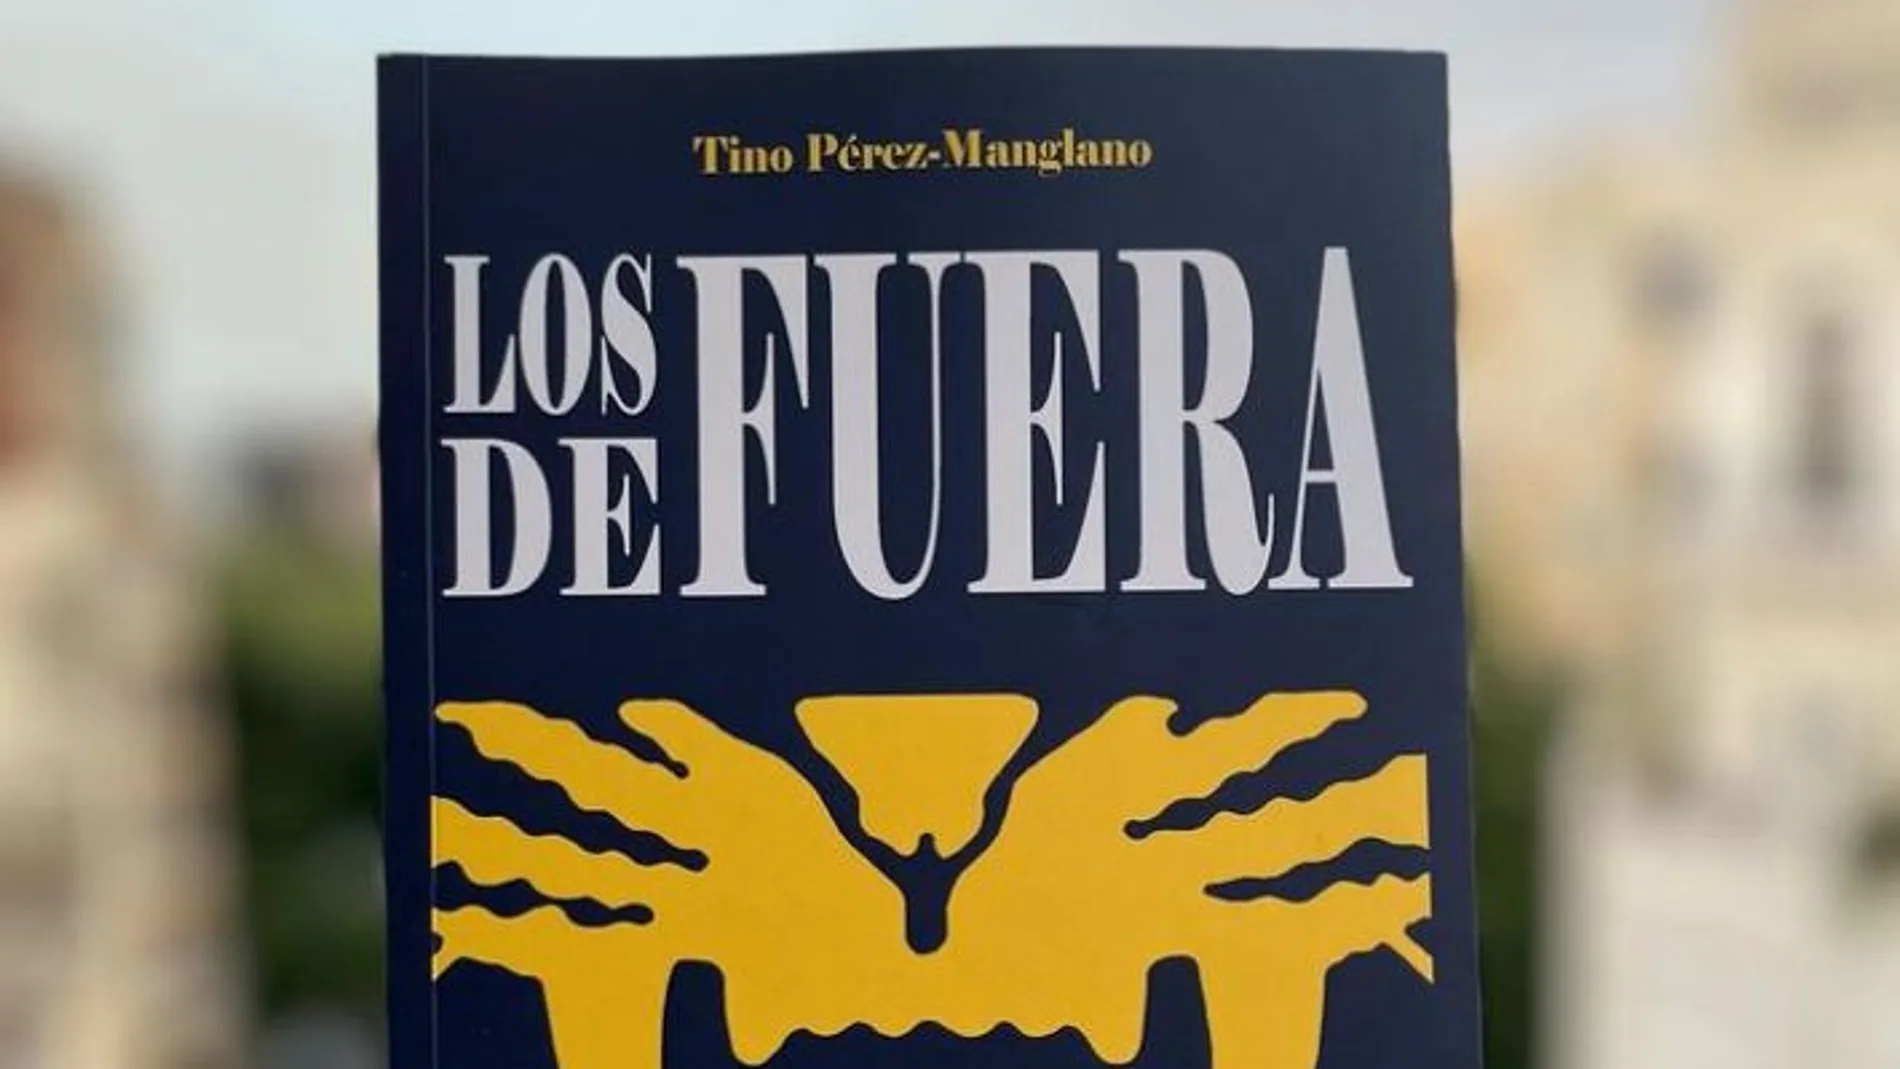 La novela "Los de fuera", del escritor valenciano Tino Pérez-Manglano